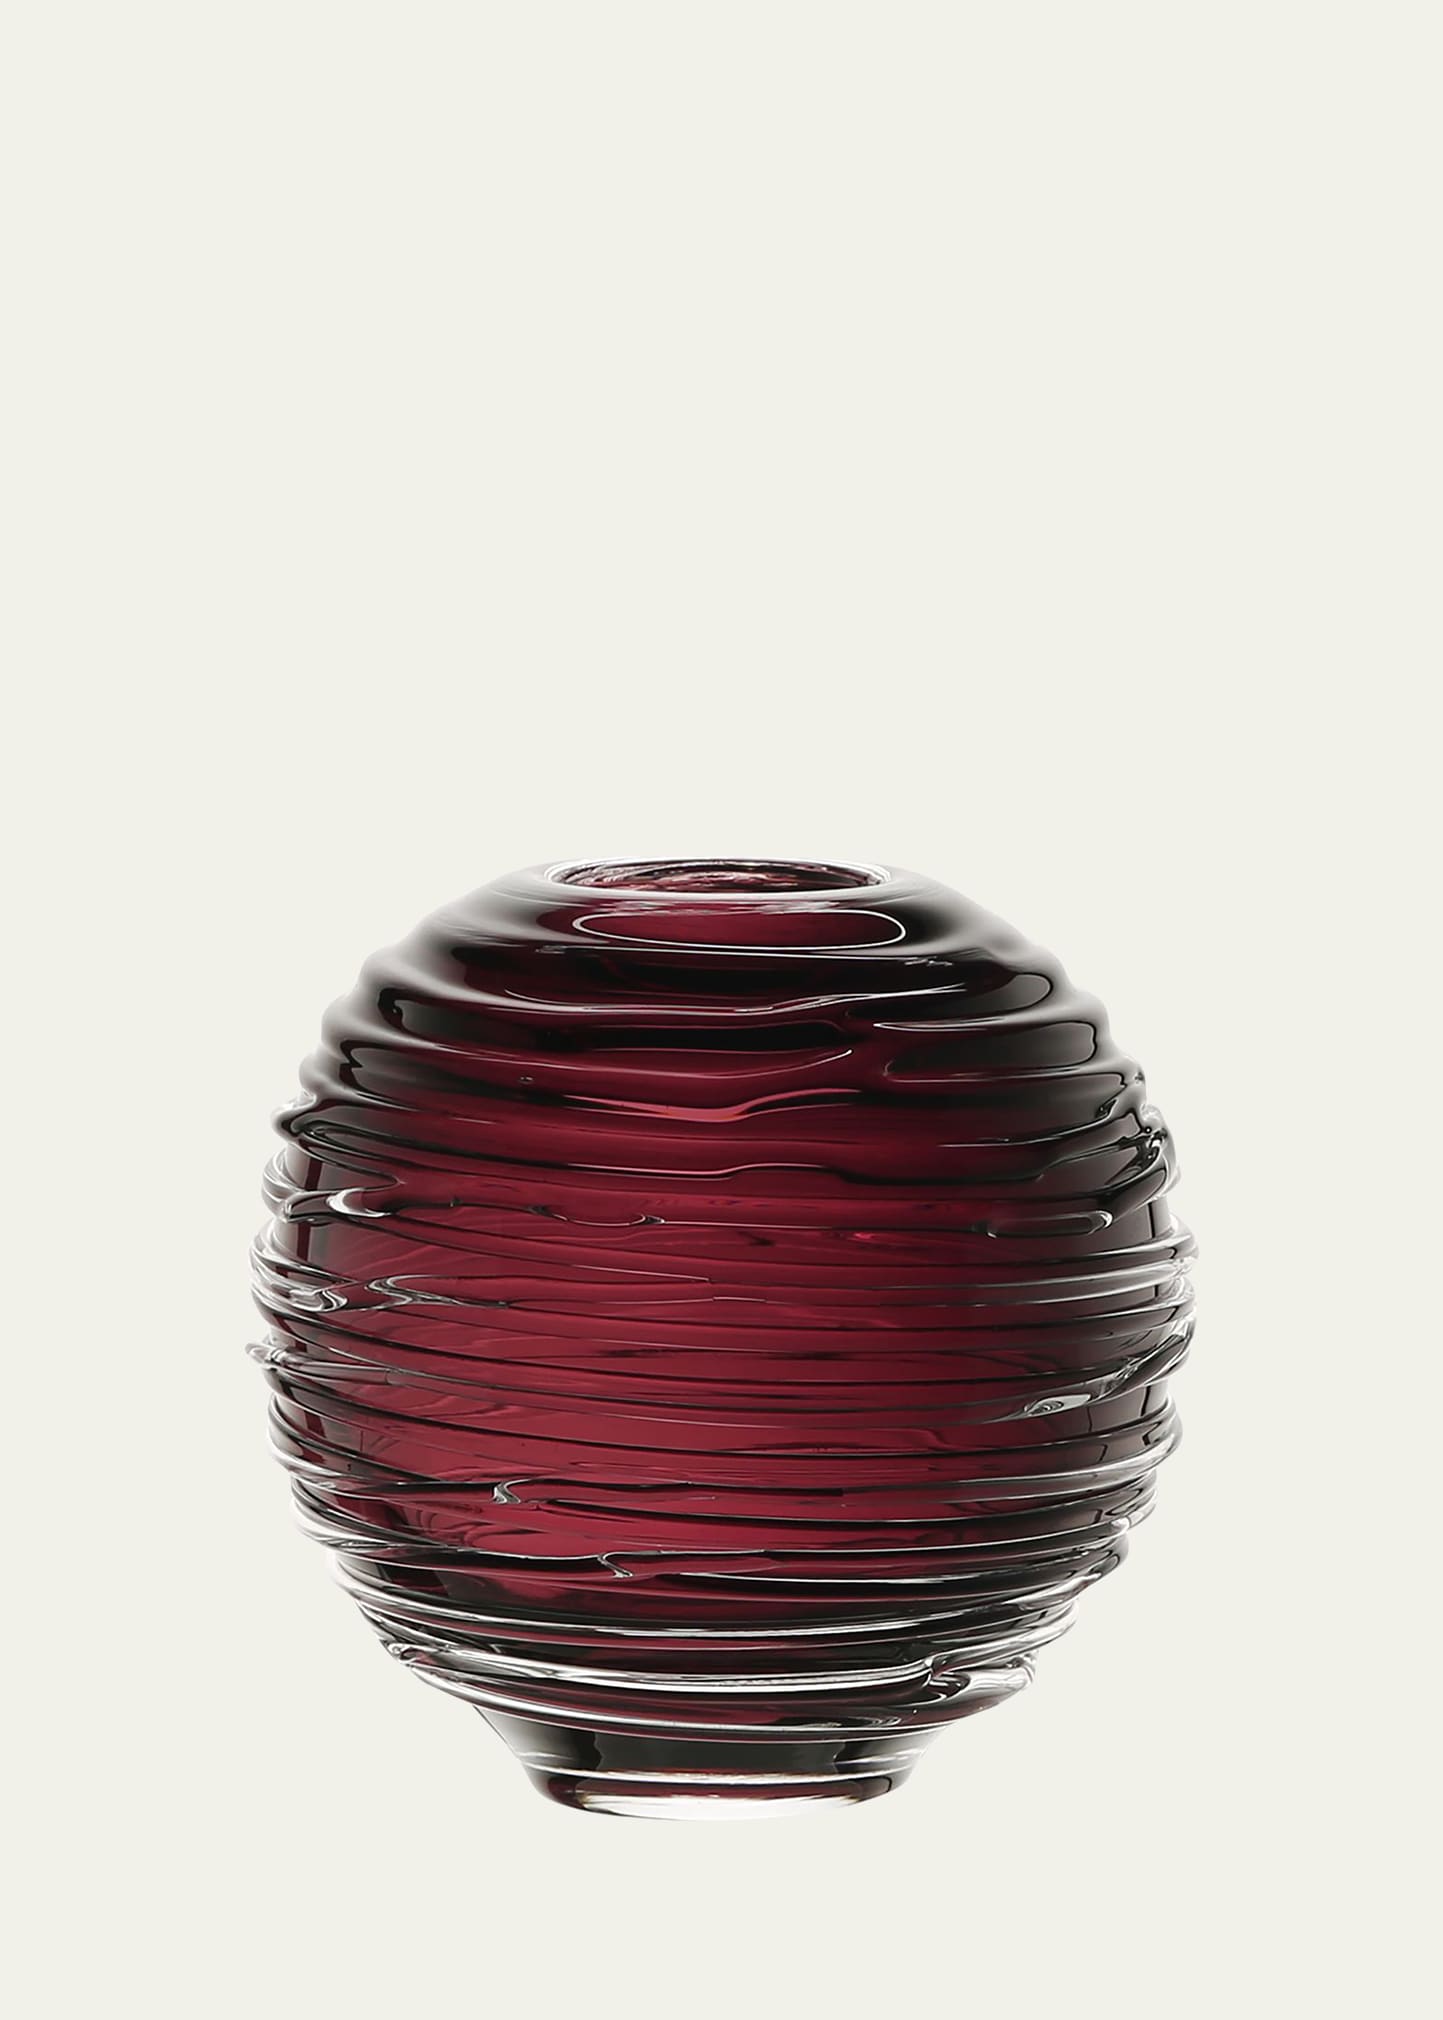 Miranda 4" Globe Vase